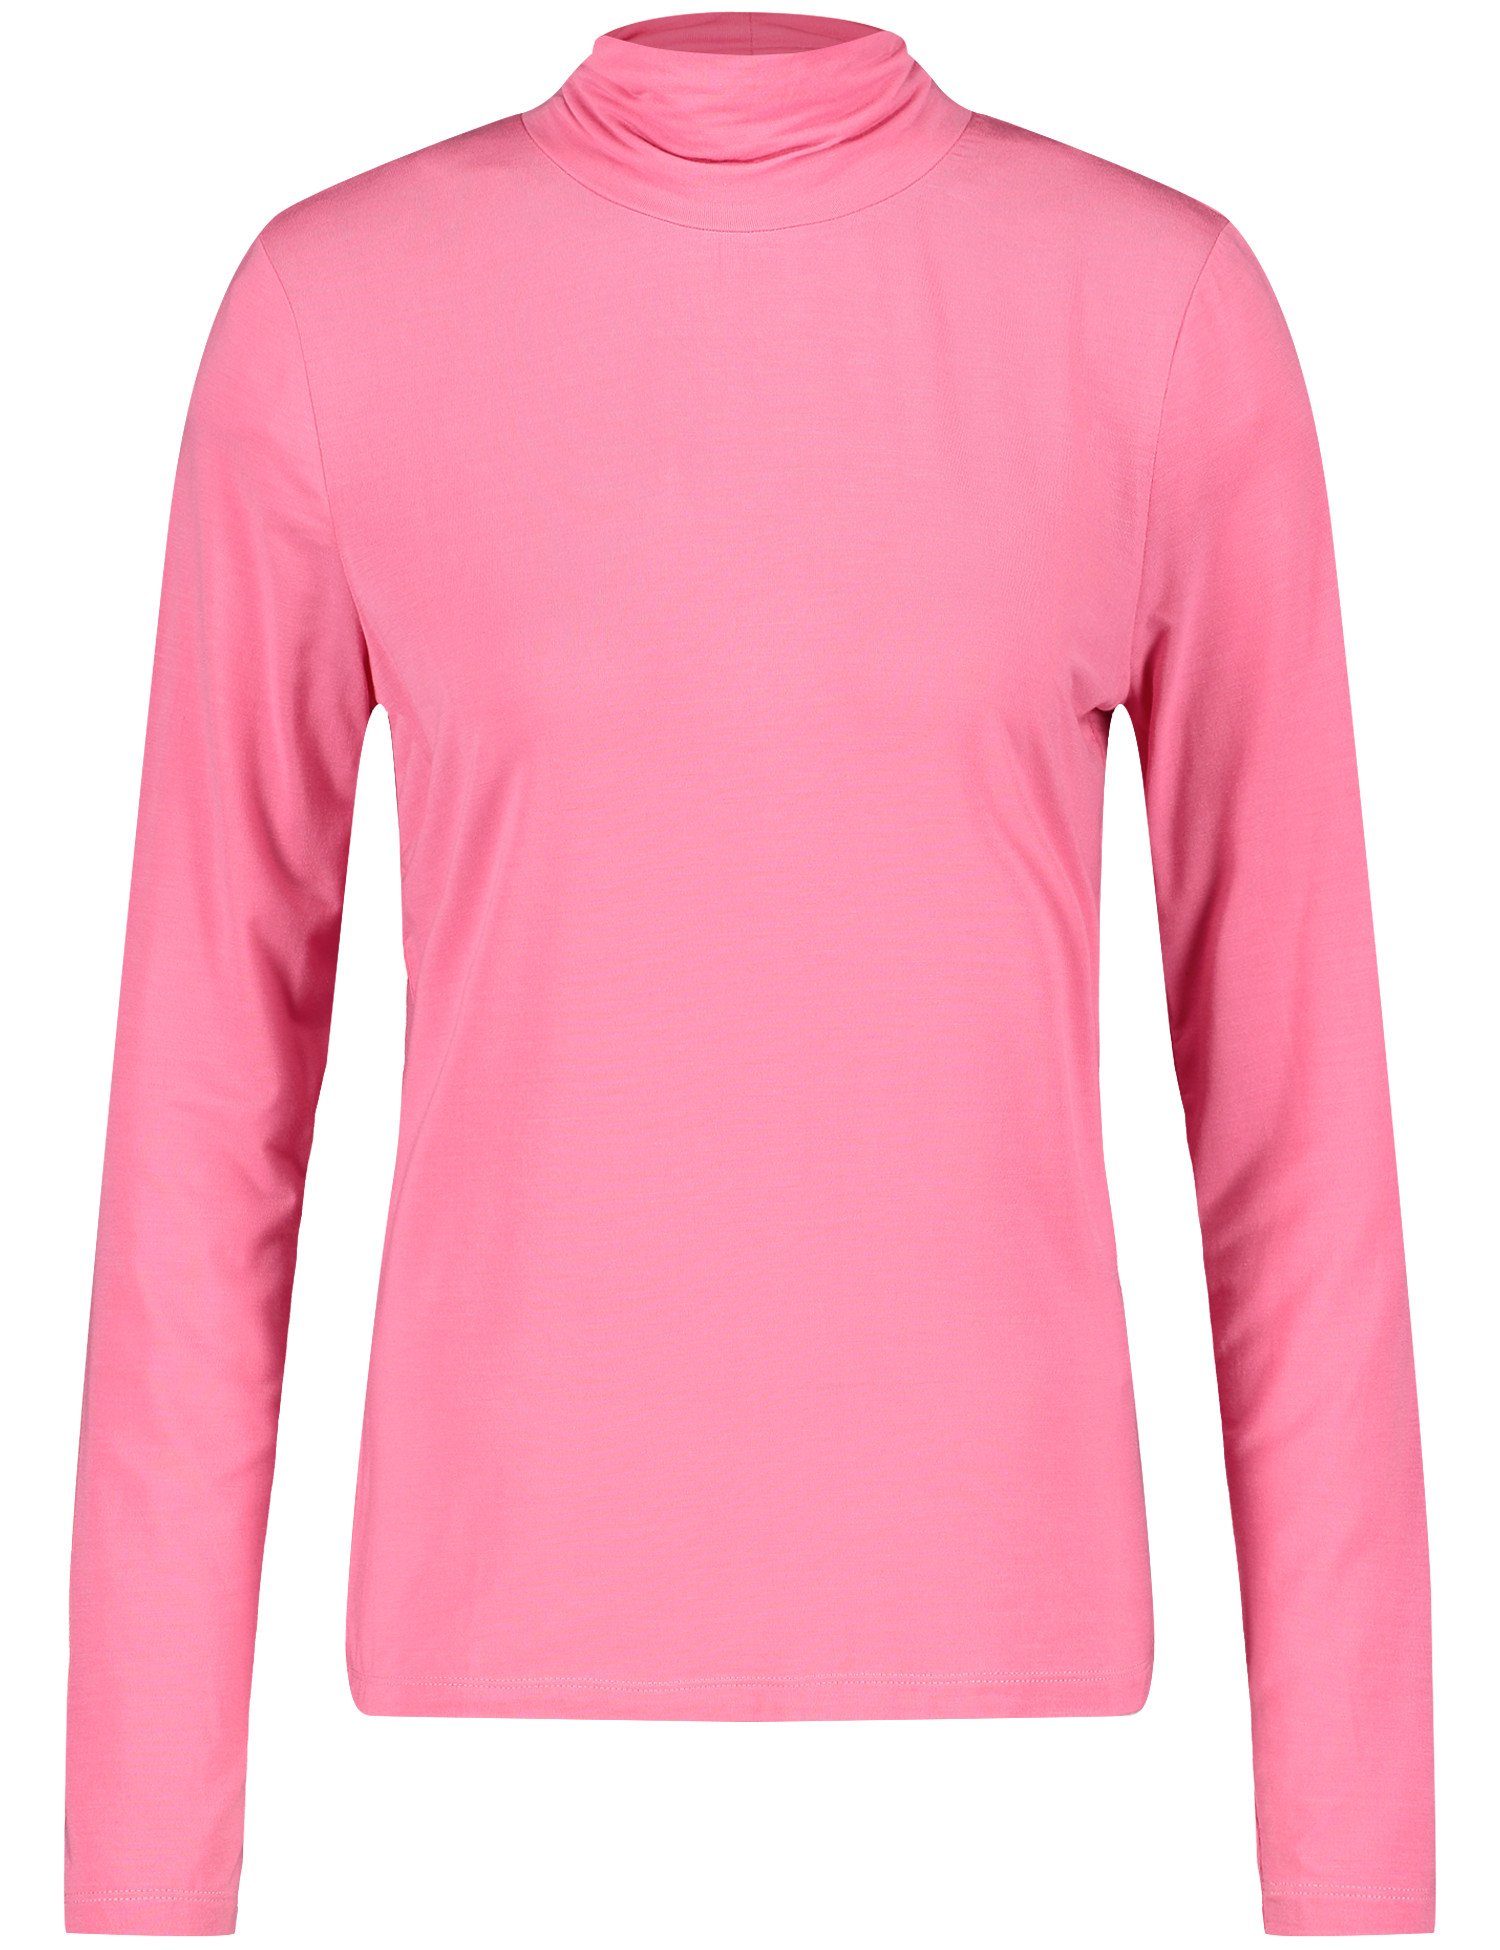 T-Shirt ROSE PINK WEBER 30894 GERRY